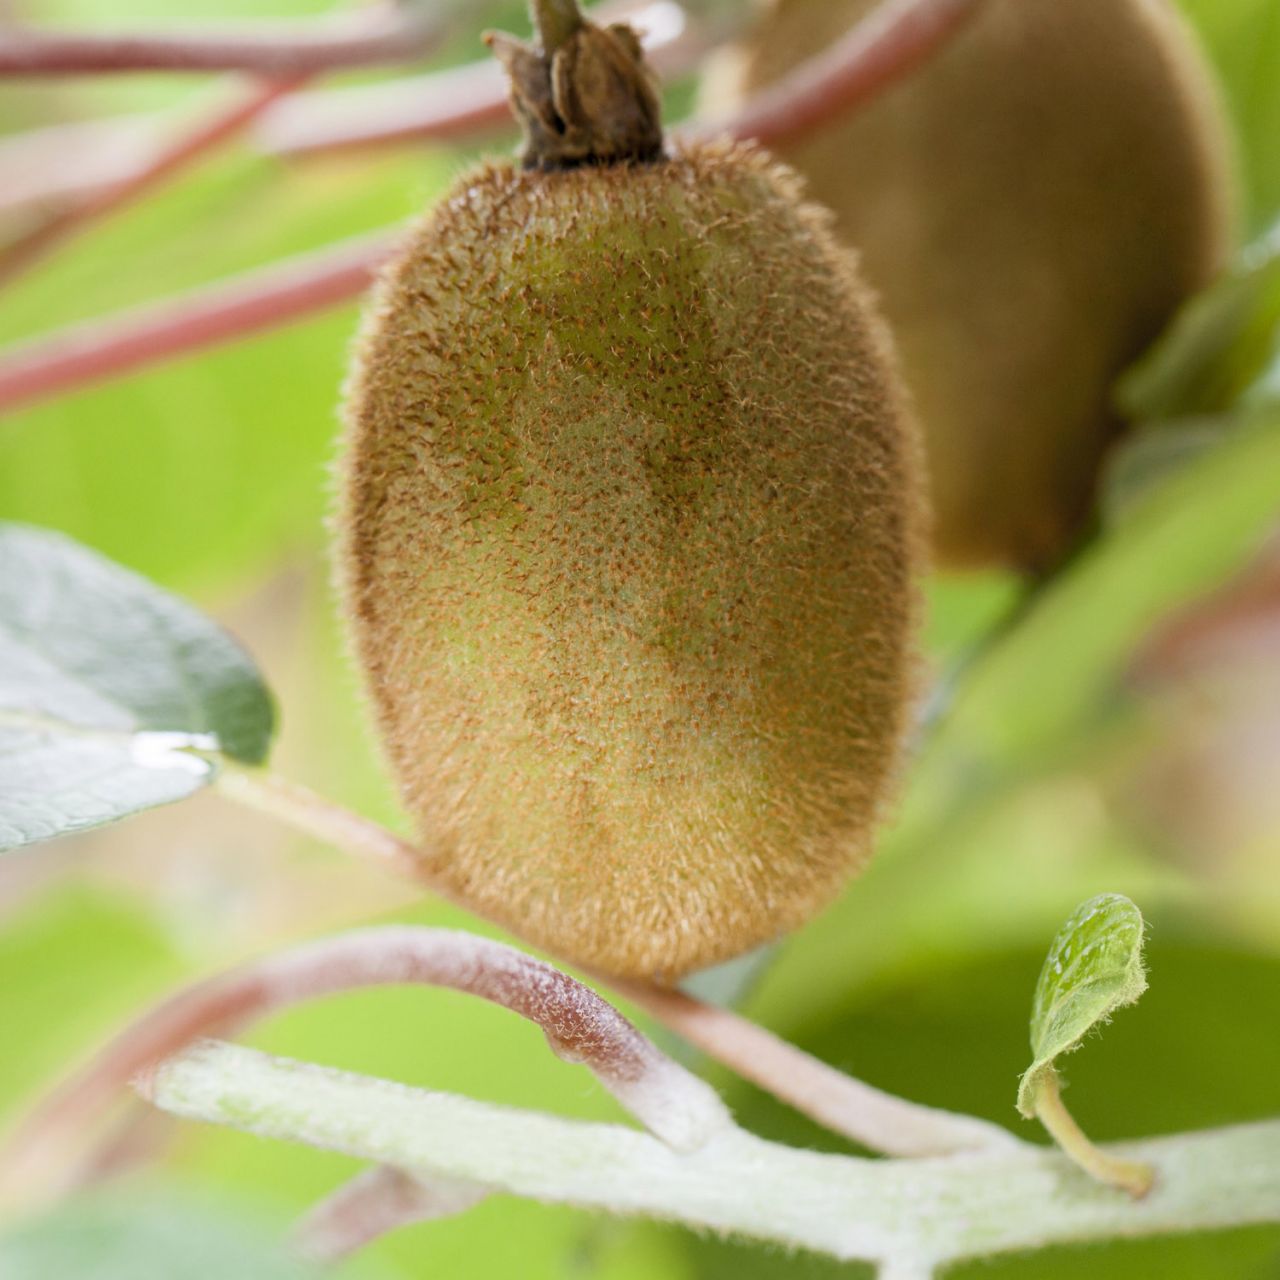 Kategorie <b>Obst </b> - Kiwi 'Boskoop' - Actinidia chinensis 'Boskoop'